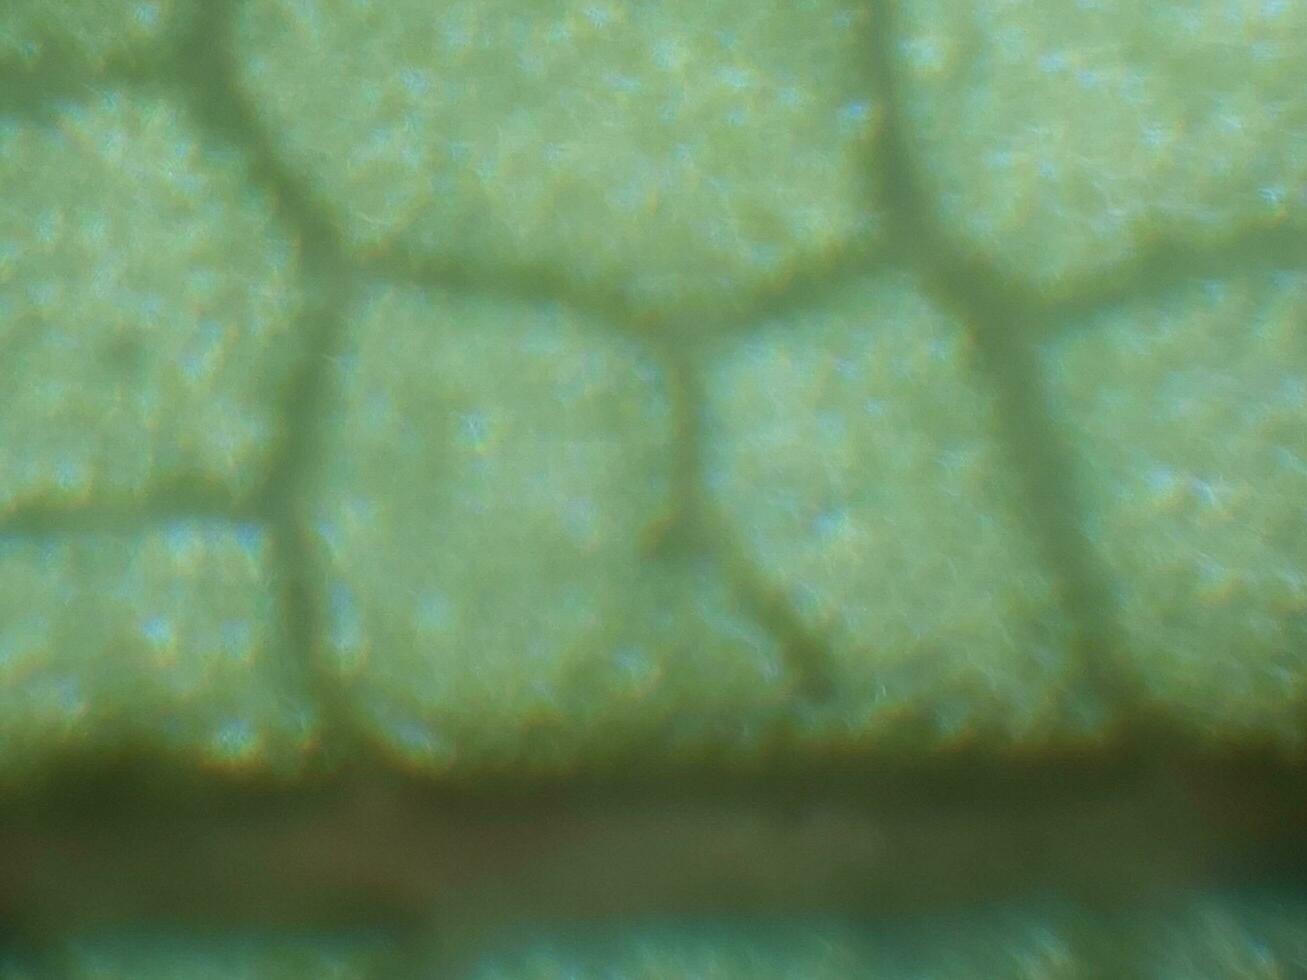 mikroskopisk fotografi av biologisk objekt foto